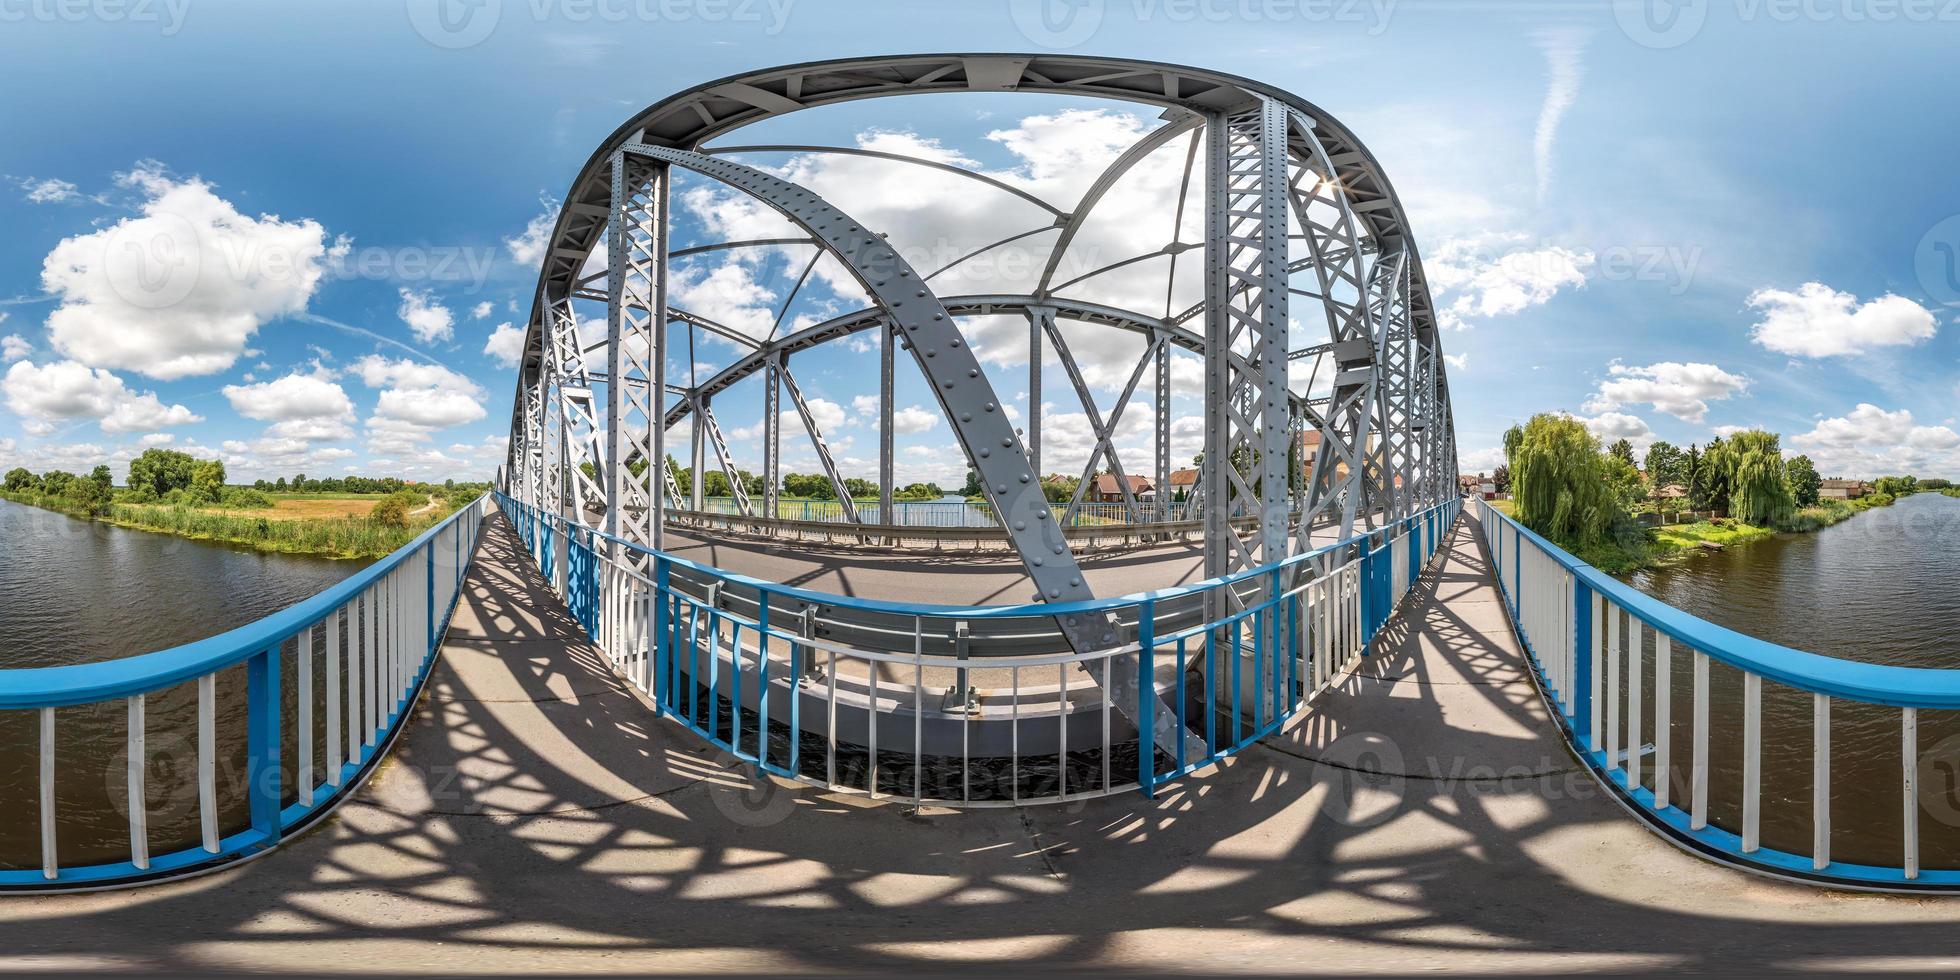 vista de ángulo de 360 grados de panorama hdri esférico completo sin costuras cerca de la construcción de marcos de acero de un enorme puente a través del río en proyección equirectangular. contenido vr ar foto